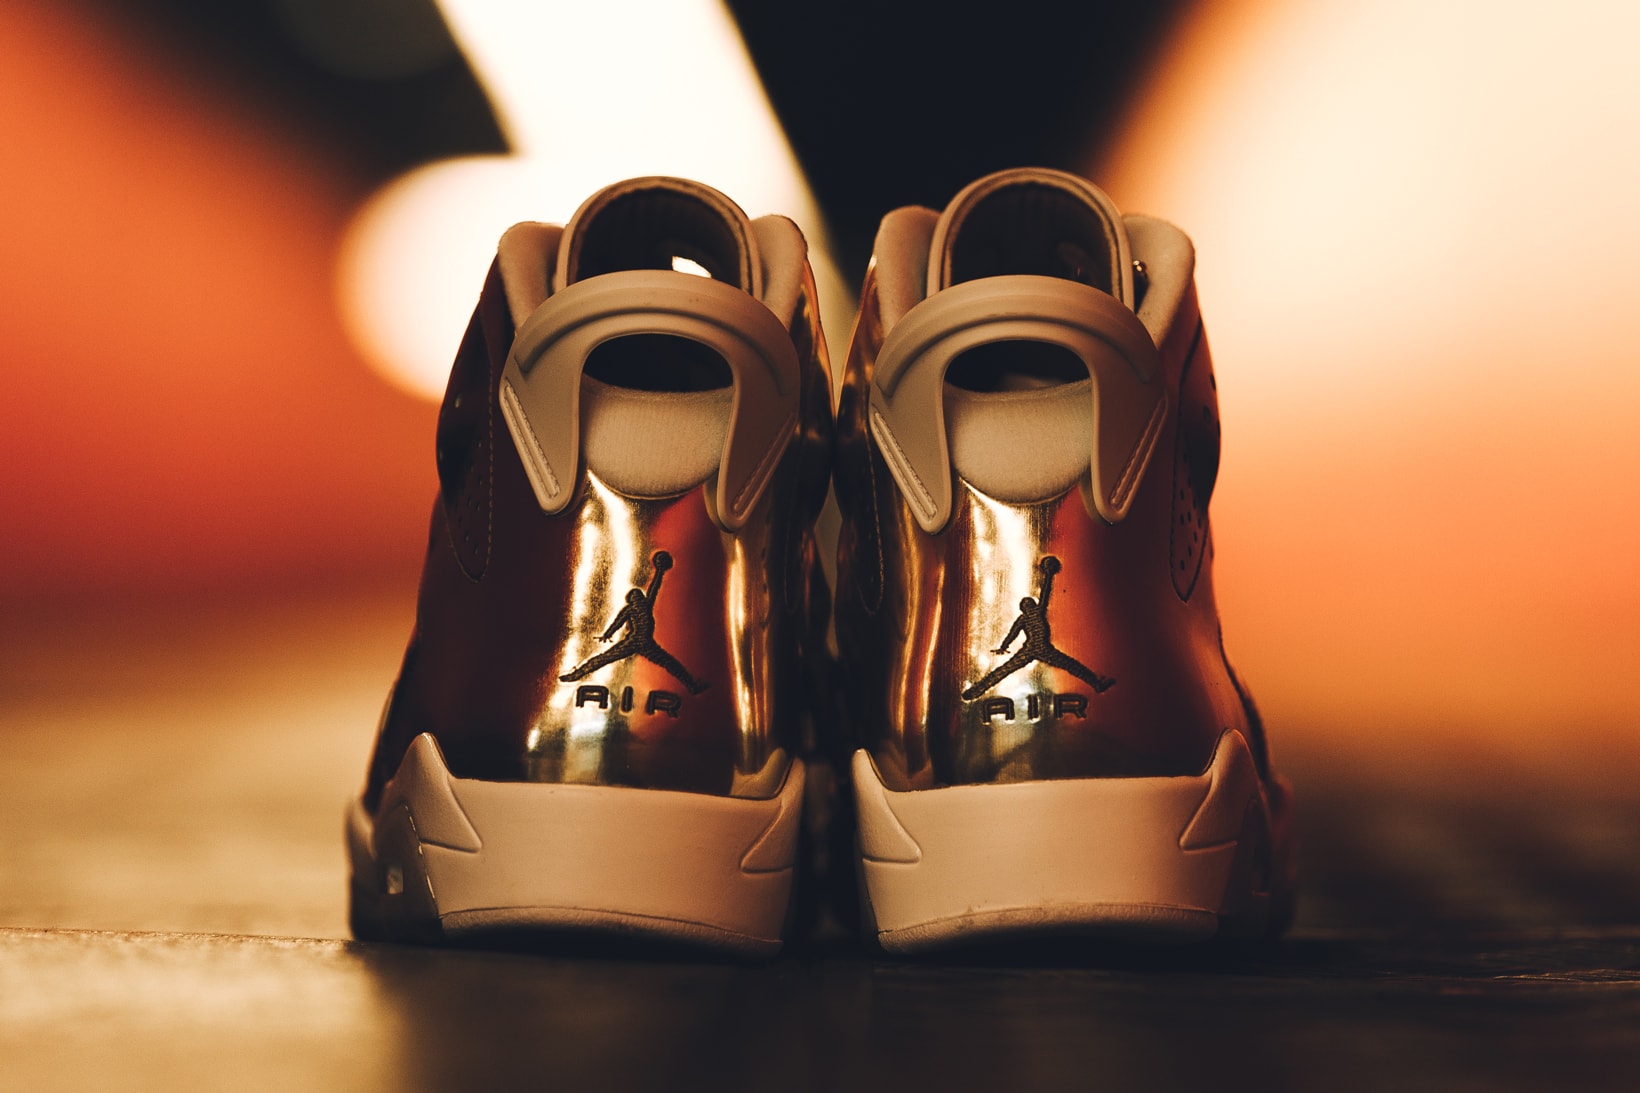 Air Jordan 6 “Pinnacle” Edition Closer Look